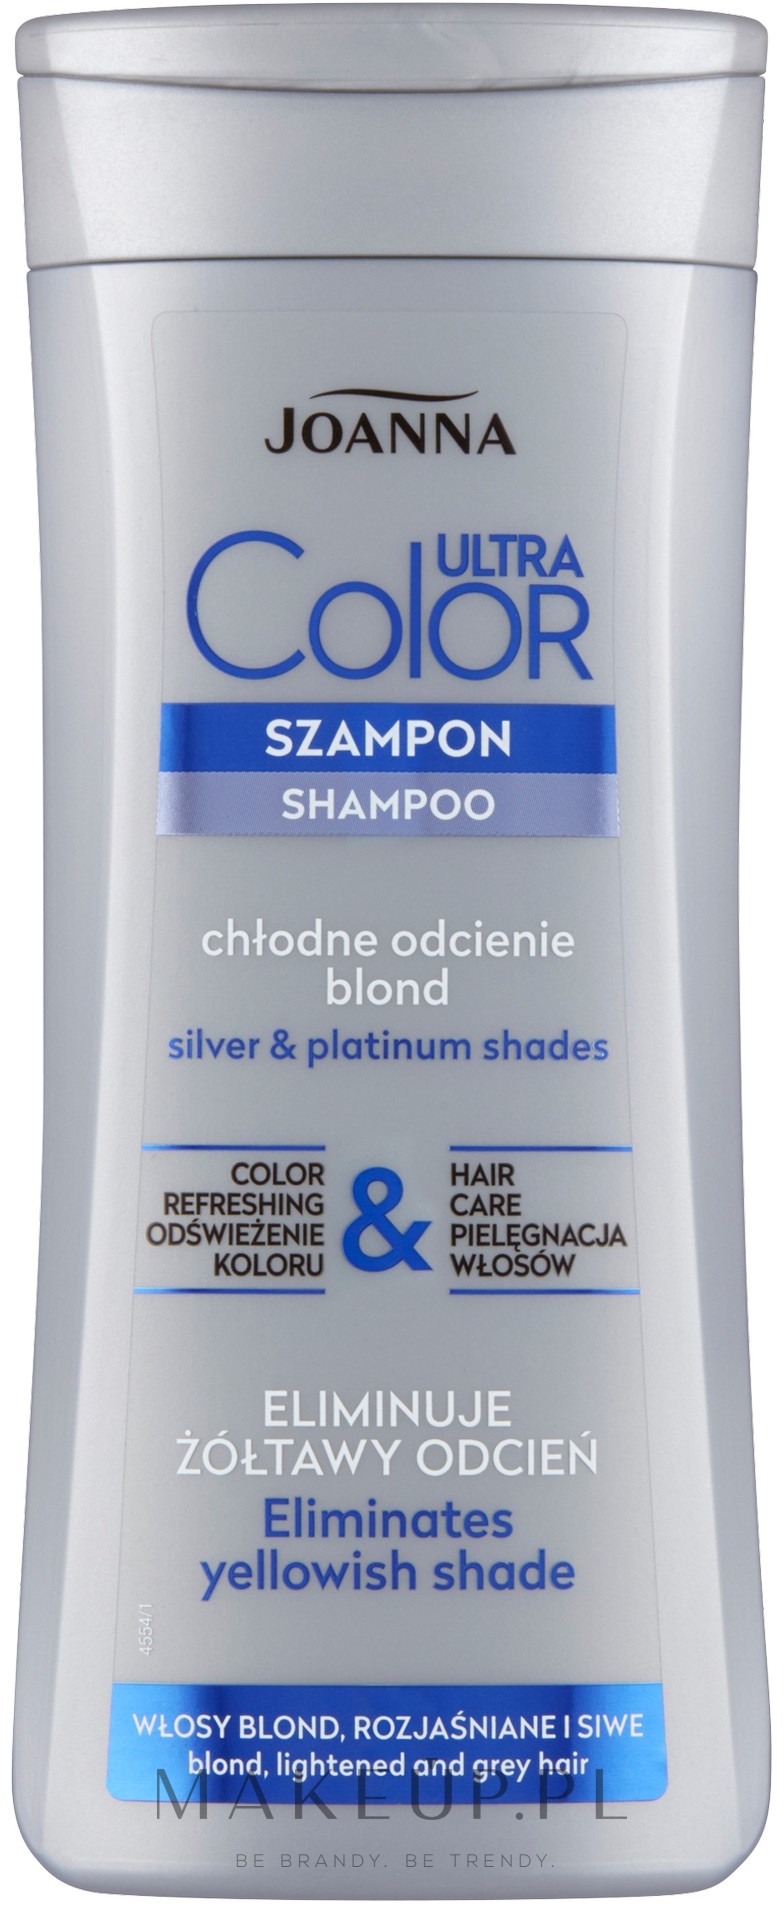 szampon do włosów siwych i rozjaśnianych